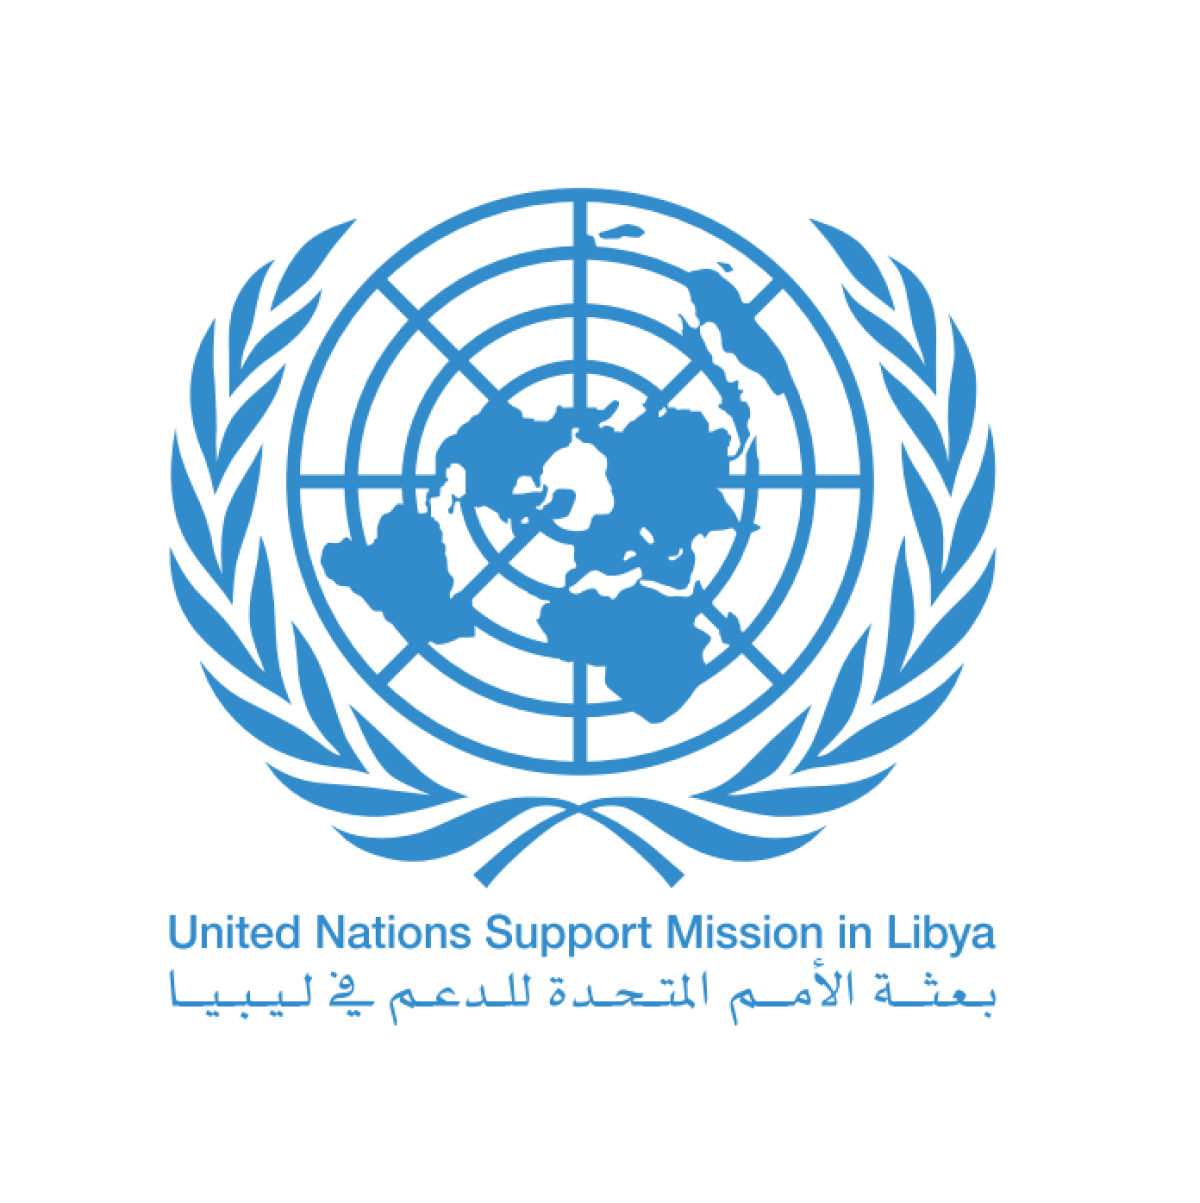 "يان كوبيش" يباشر مهام عمله مبعوثاً خاصاً للأمين العام للأمم المتحدة إلى ليبيا ويؤكد الالتزام باستقرار ليبيا